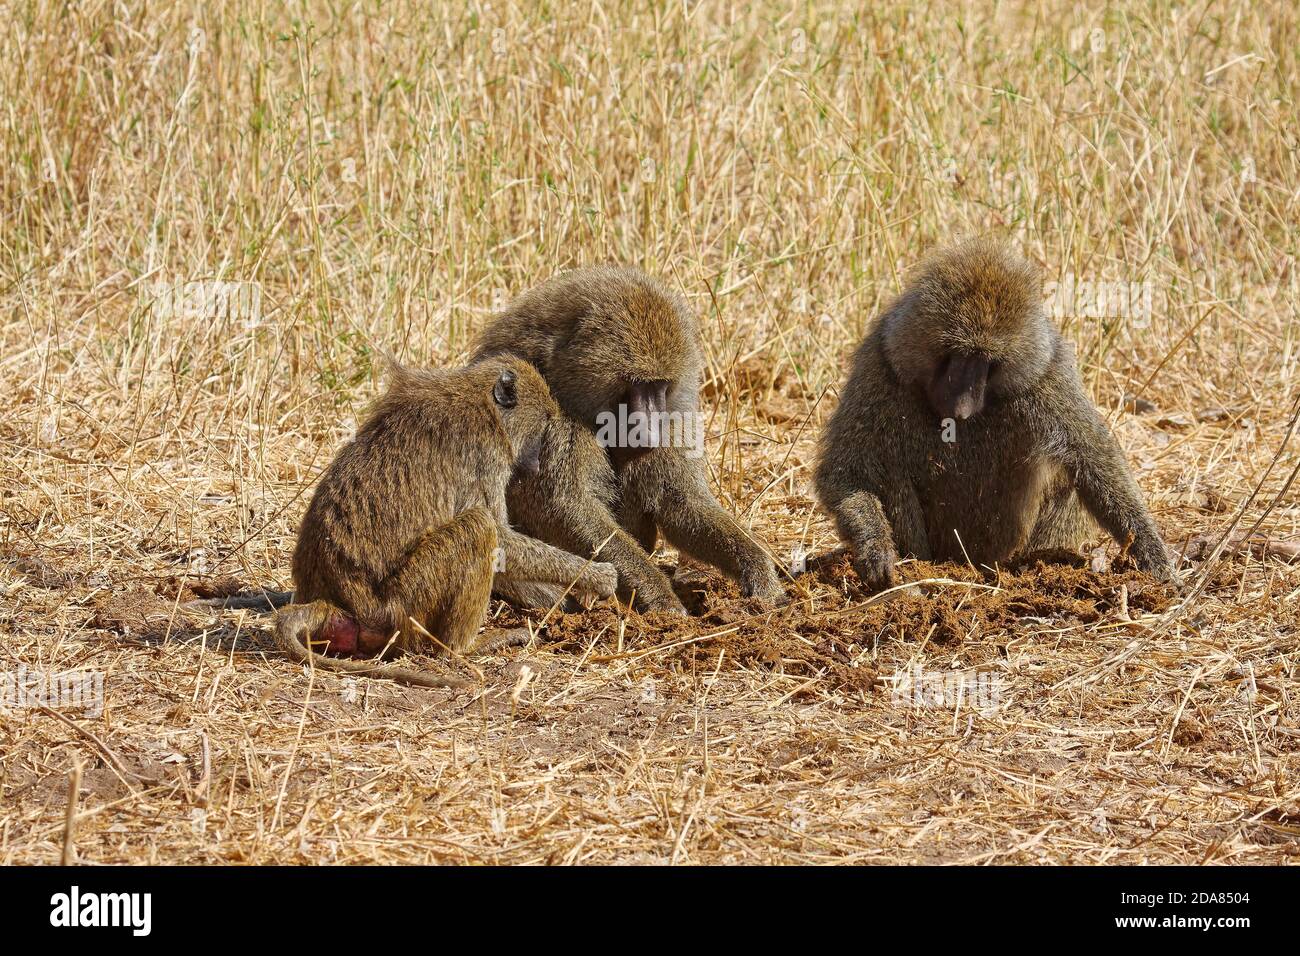 3 Olive baboons; sitting, Papiocynocephalus anubis; Old World Monkey; primate; wildlife, nature, Tarangire National Park; Tanzania; Africa Stock Photo